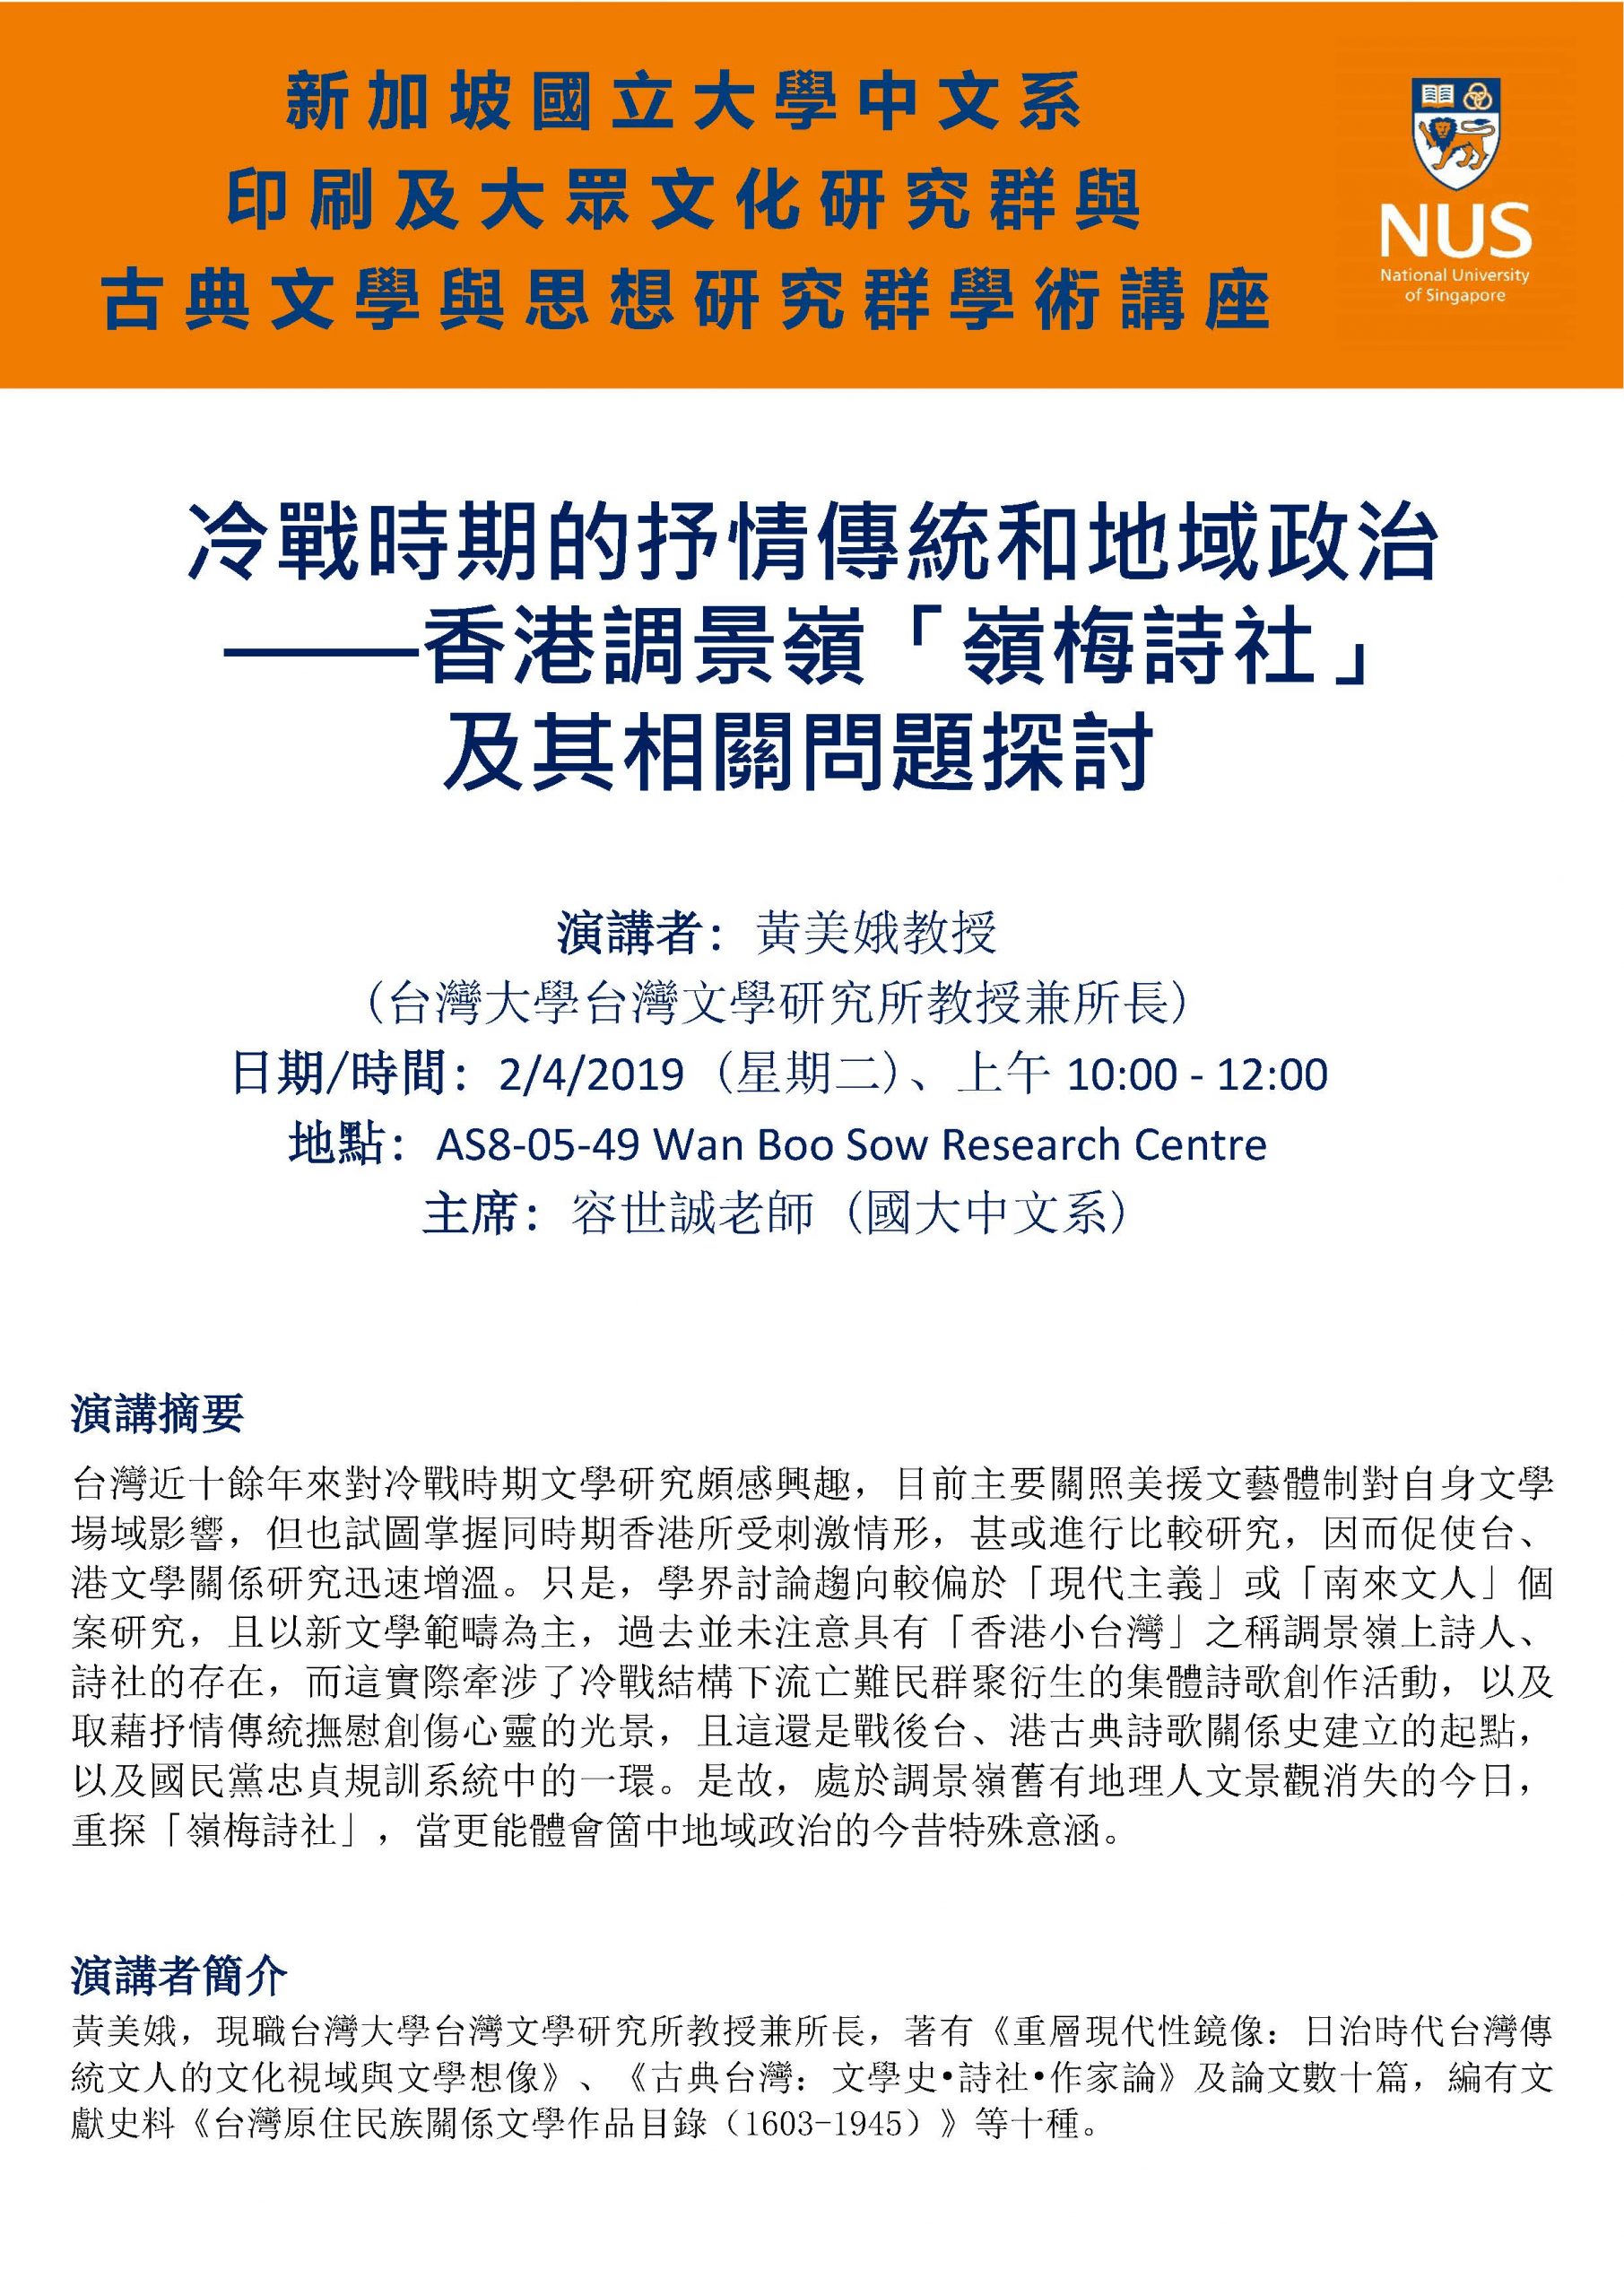 Huang Mei Er Seminar 2 April